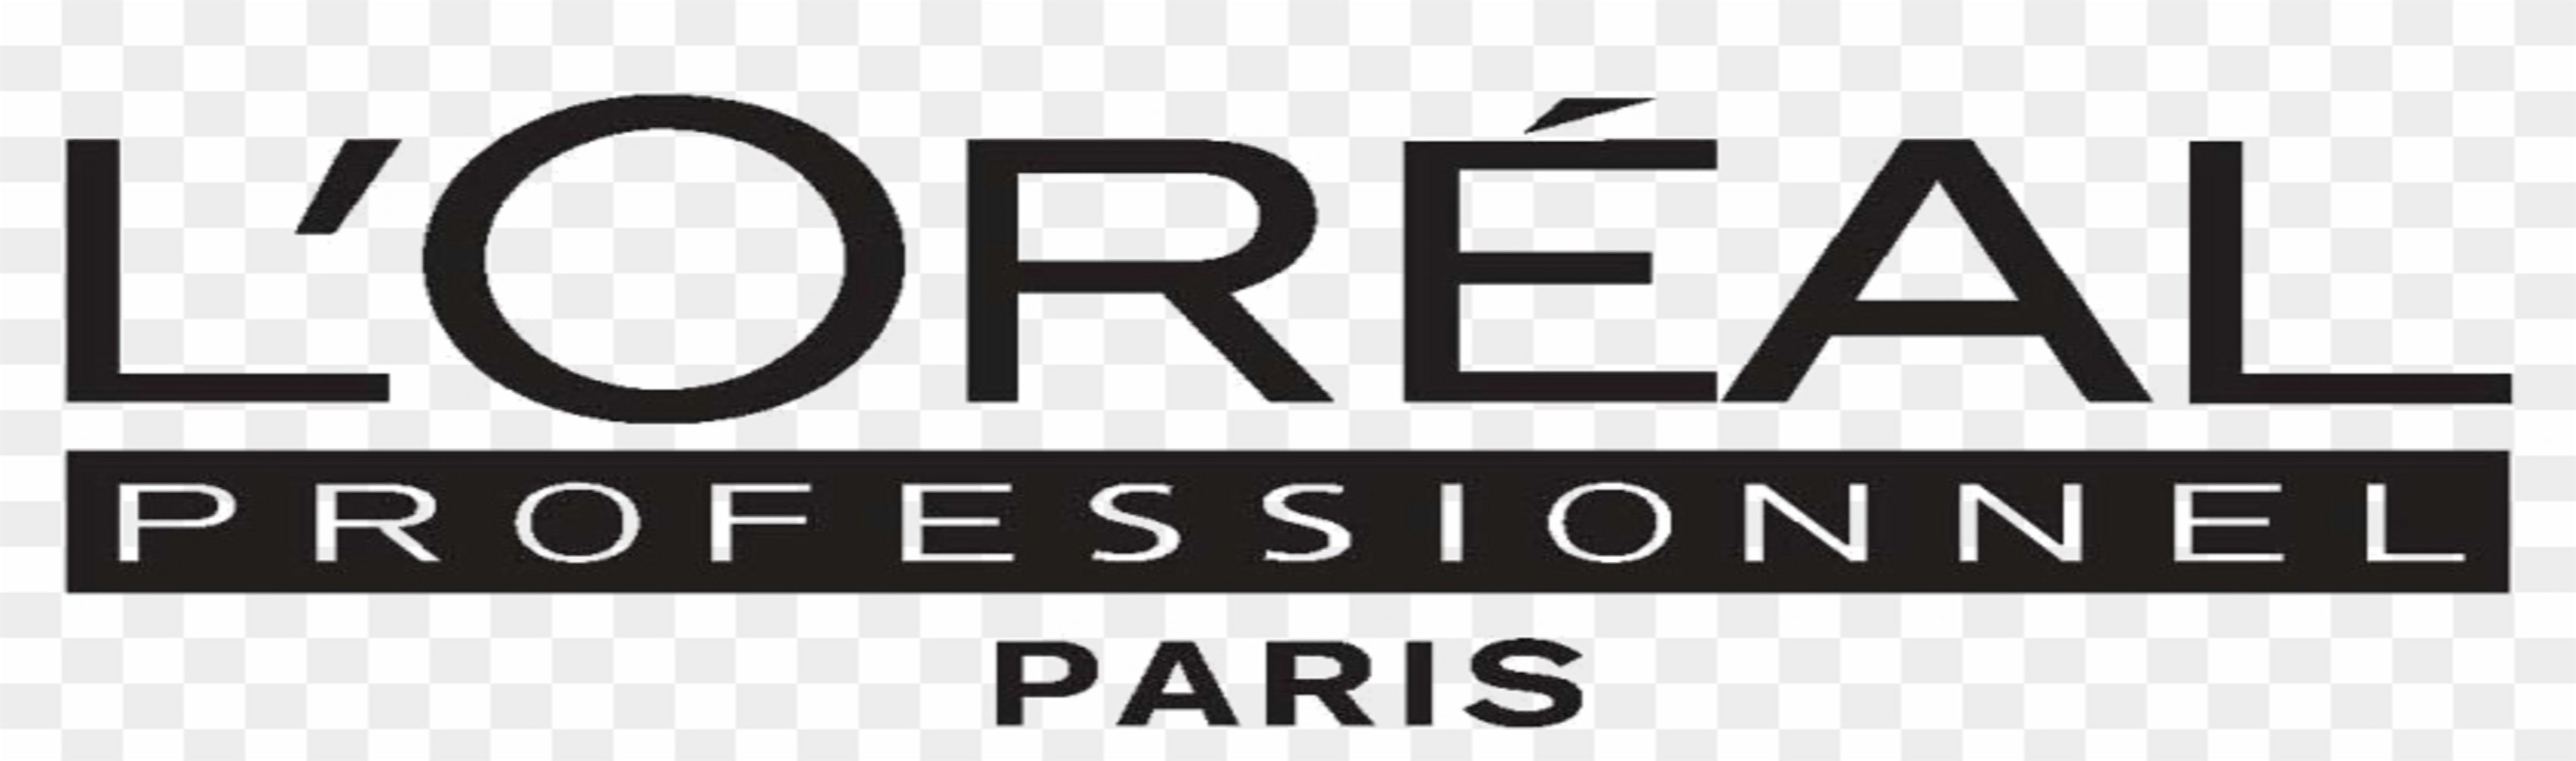 L'ORÉAL PROFESSIONNEL PARIS